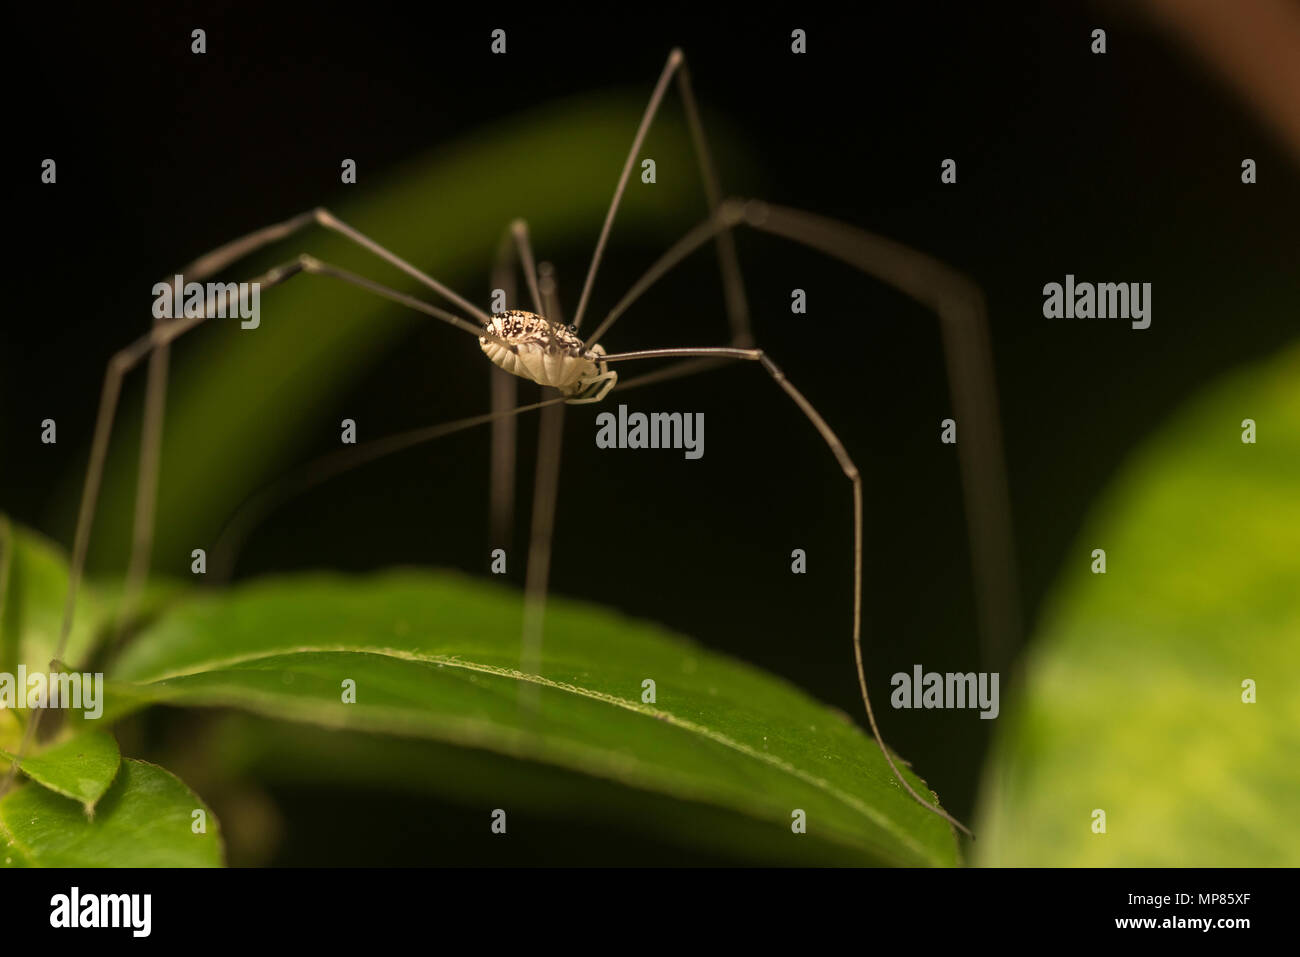 A Daddy Longlegs aussi connu comme un moissonneur récolte est un type d'arachnide étroitement liée à des araignées. Banque D'Images